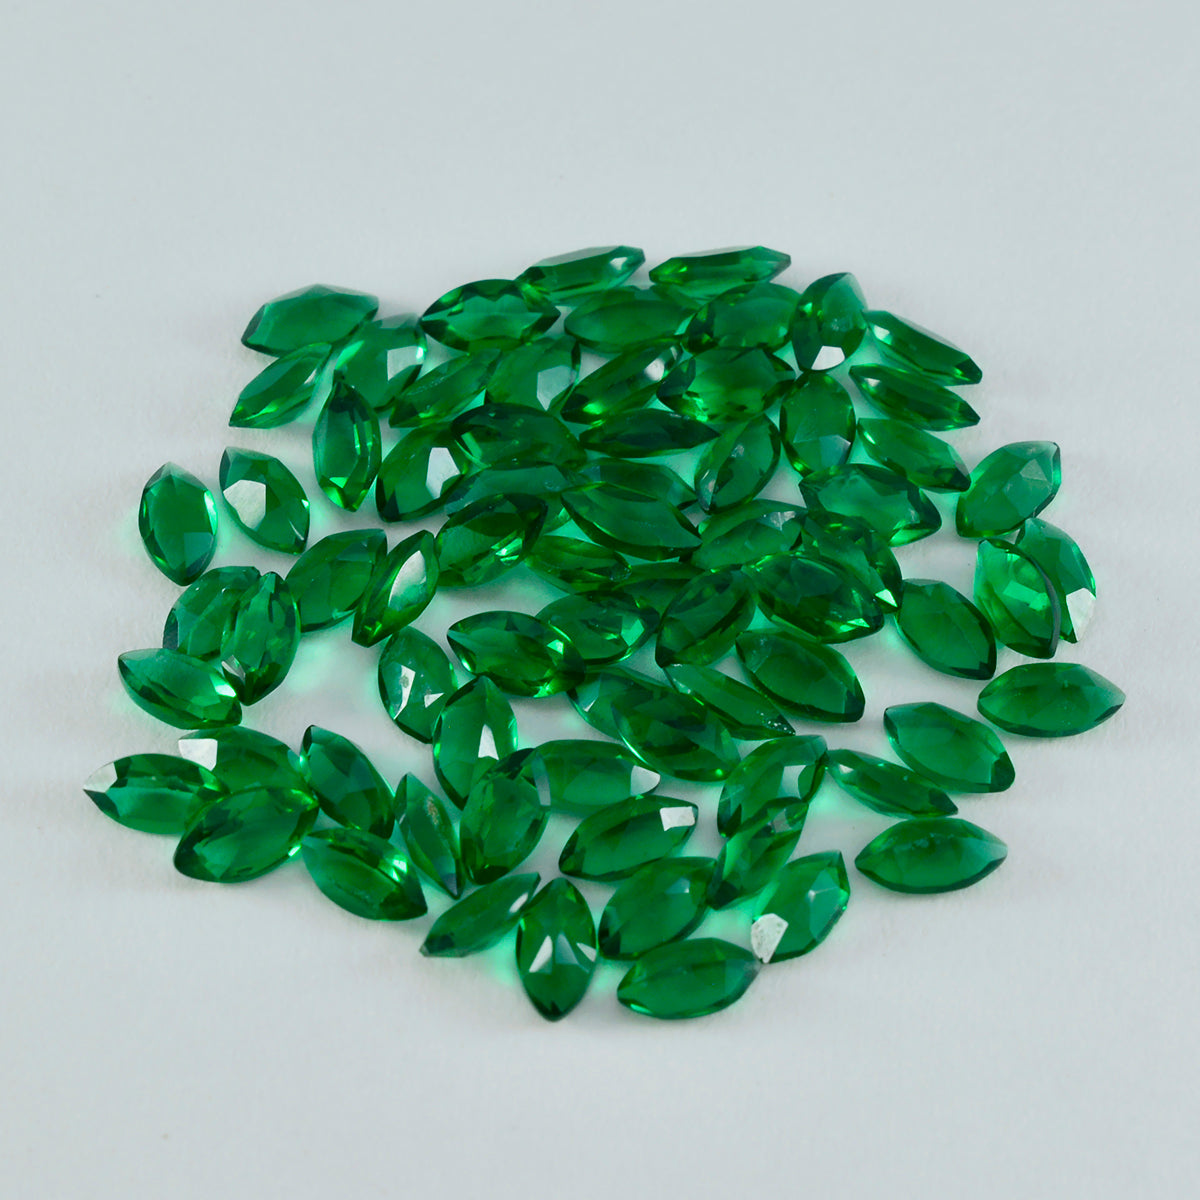 Riyogems 1 Stück grüner Smaragd, CZ, facettiert, 2 x 4 mm, Marquise-Form, Edelstein von erstaunlicher Qualität